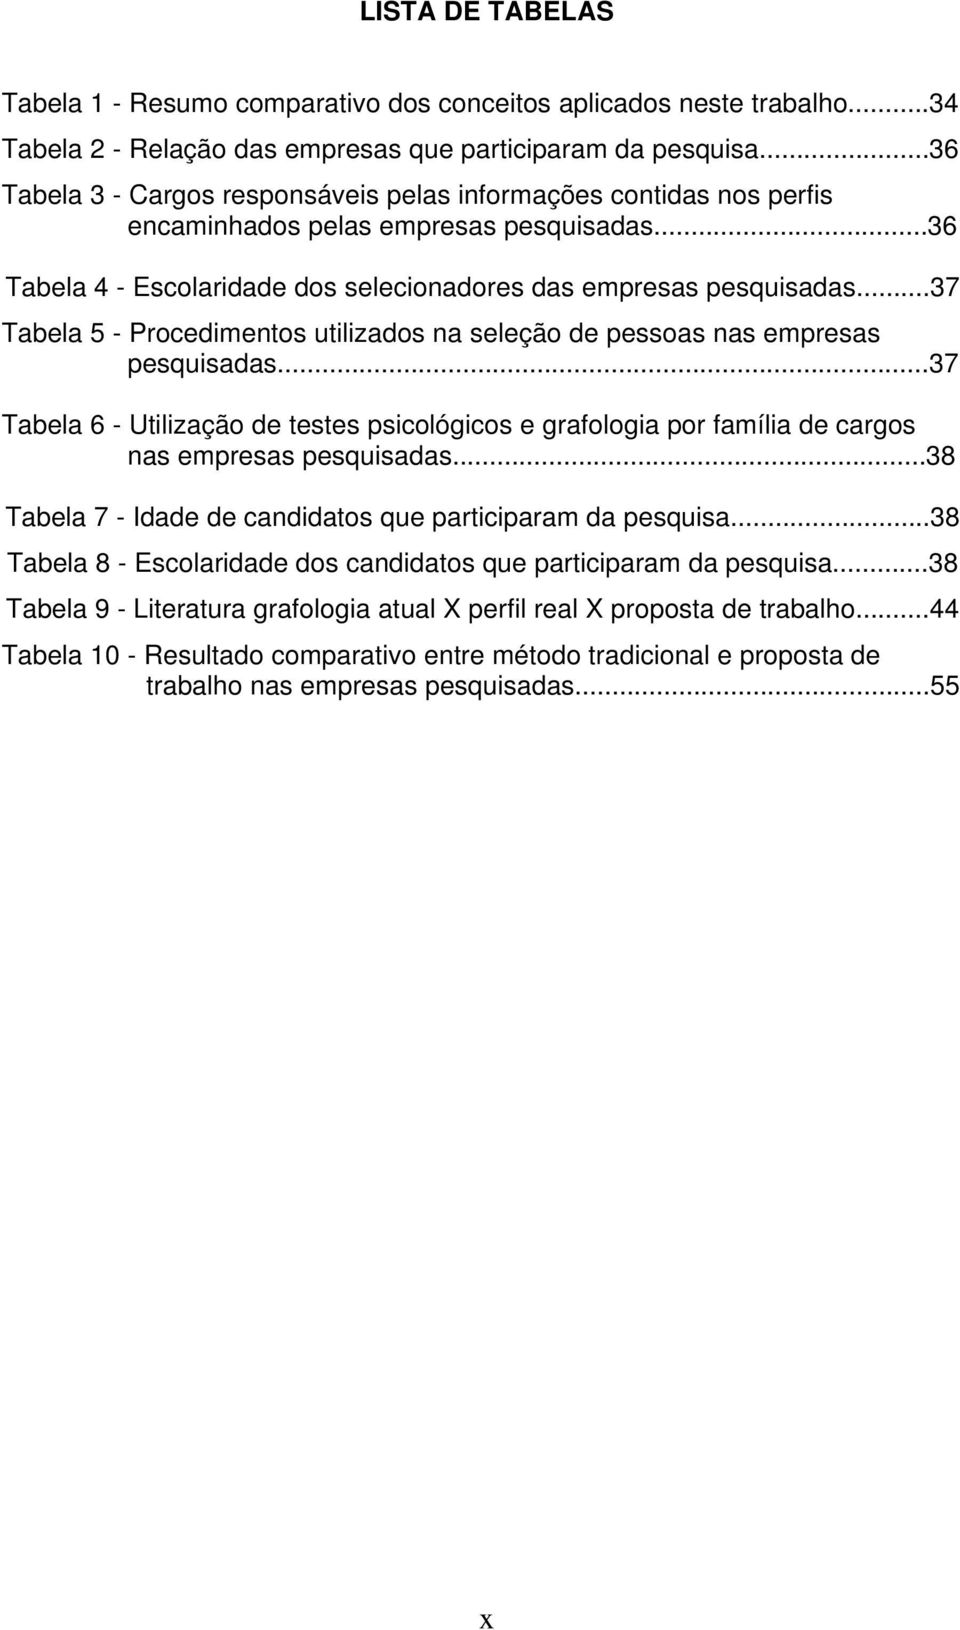 ..37 Tabela 5 - Procedimentos utilizados na seleção de pessoas nas empresas pesquisadas...37 Tabela 6 - Utilização de testes psicológicos e grafologia por família de cargos nas empresas pesquisadas.